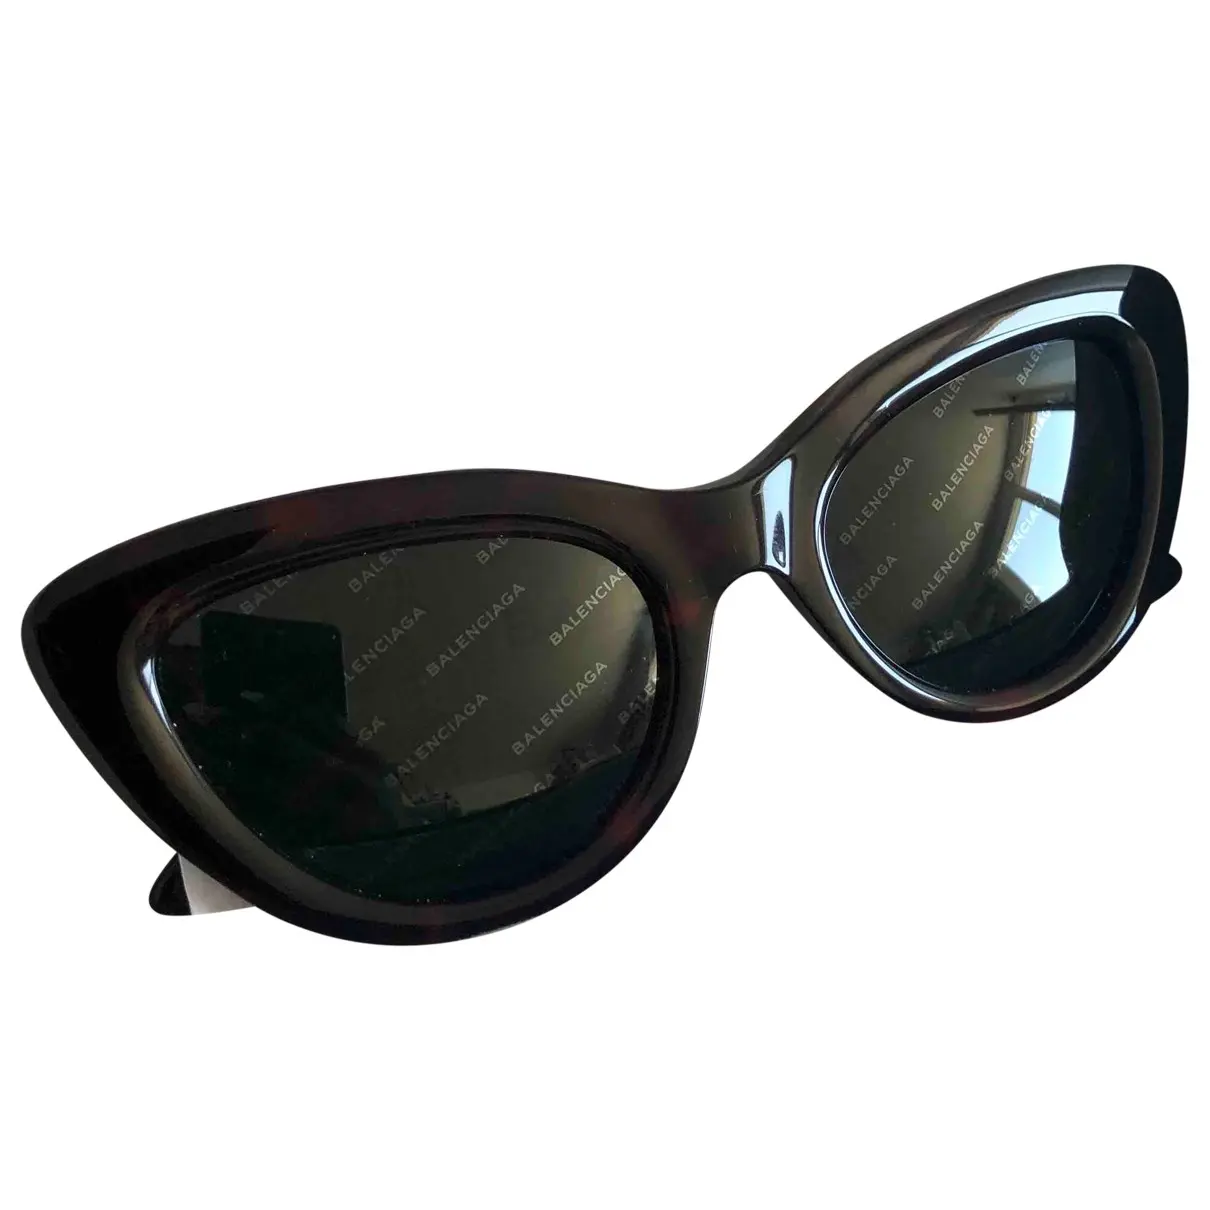 Invisible Cat sunglasses Balenciaga